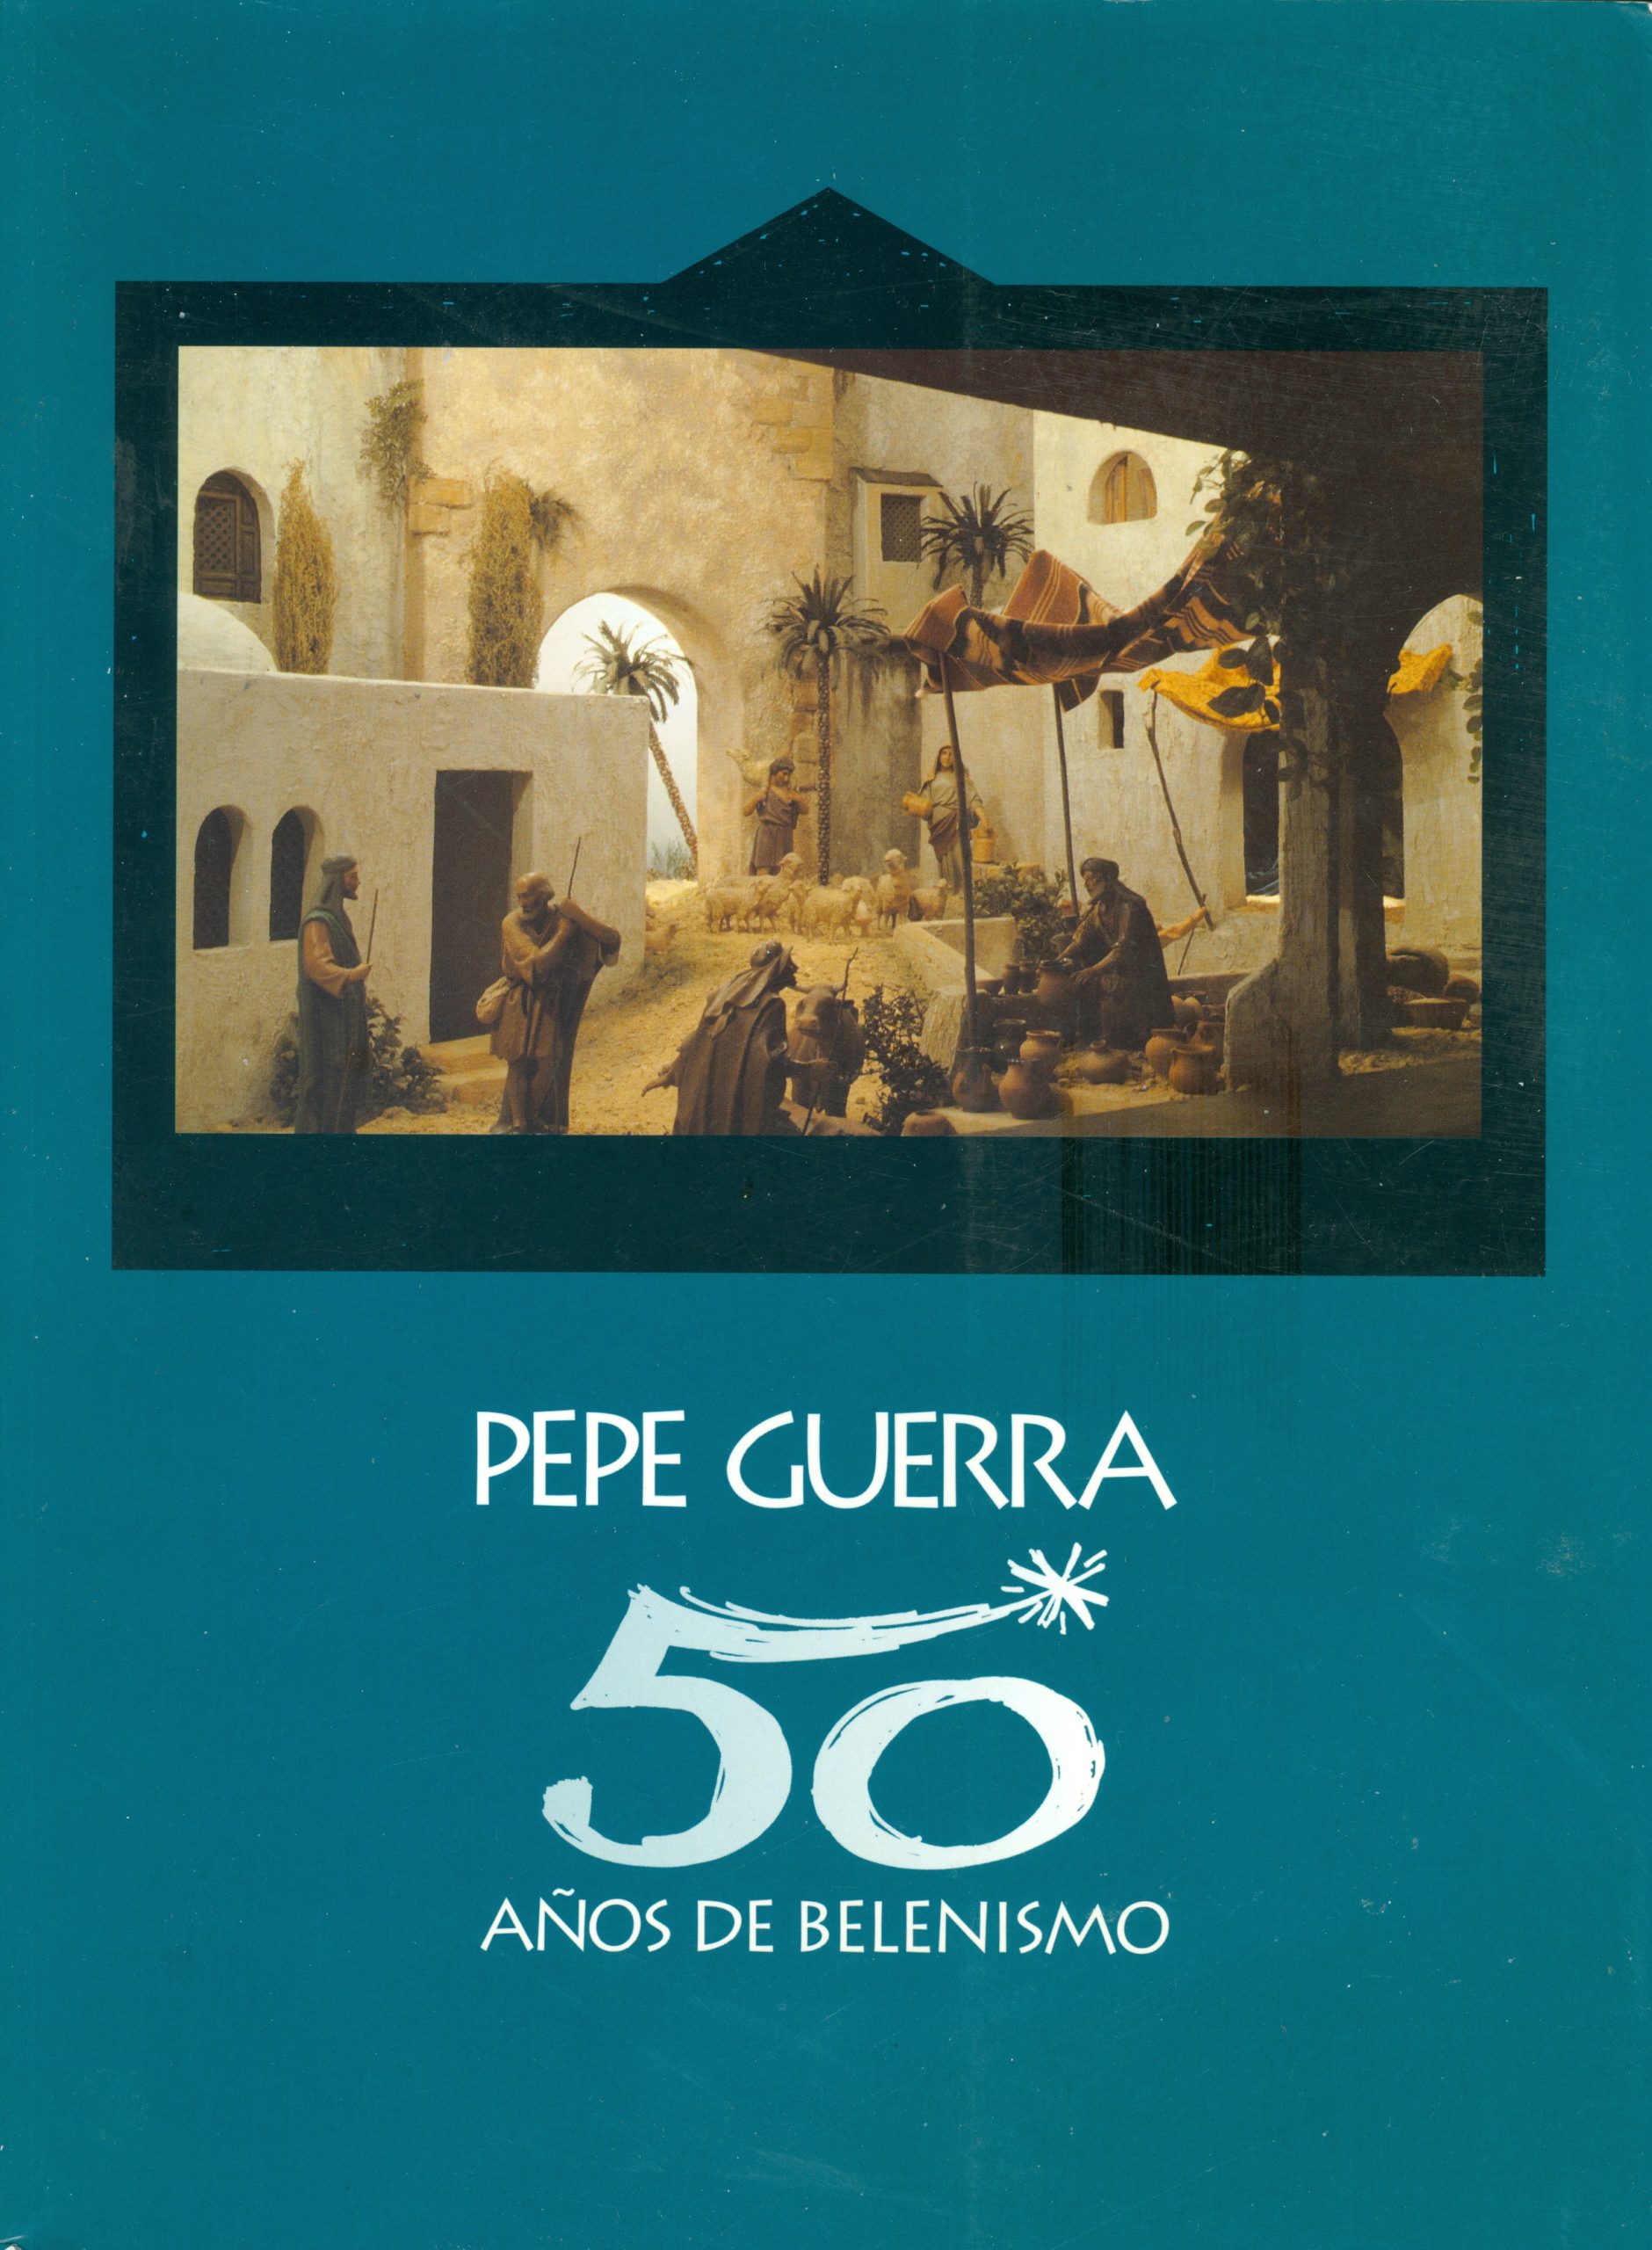 Portada del libro «Pepe Guerra, 50 años de belenismo» (1997)